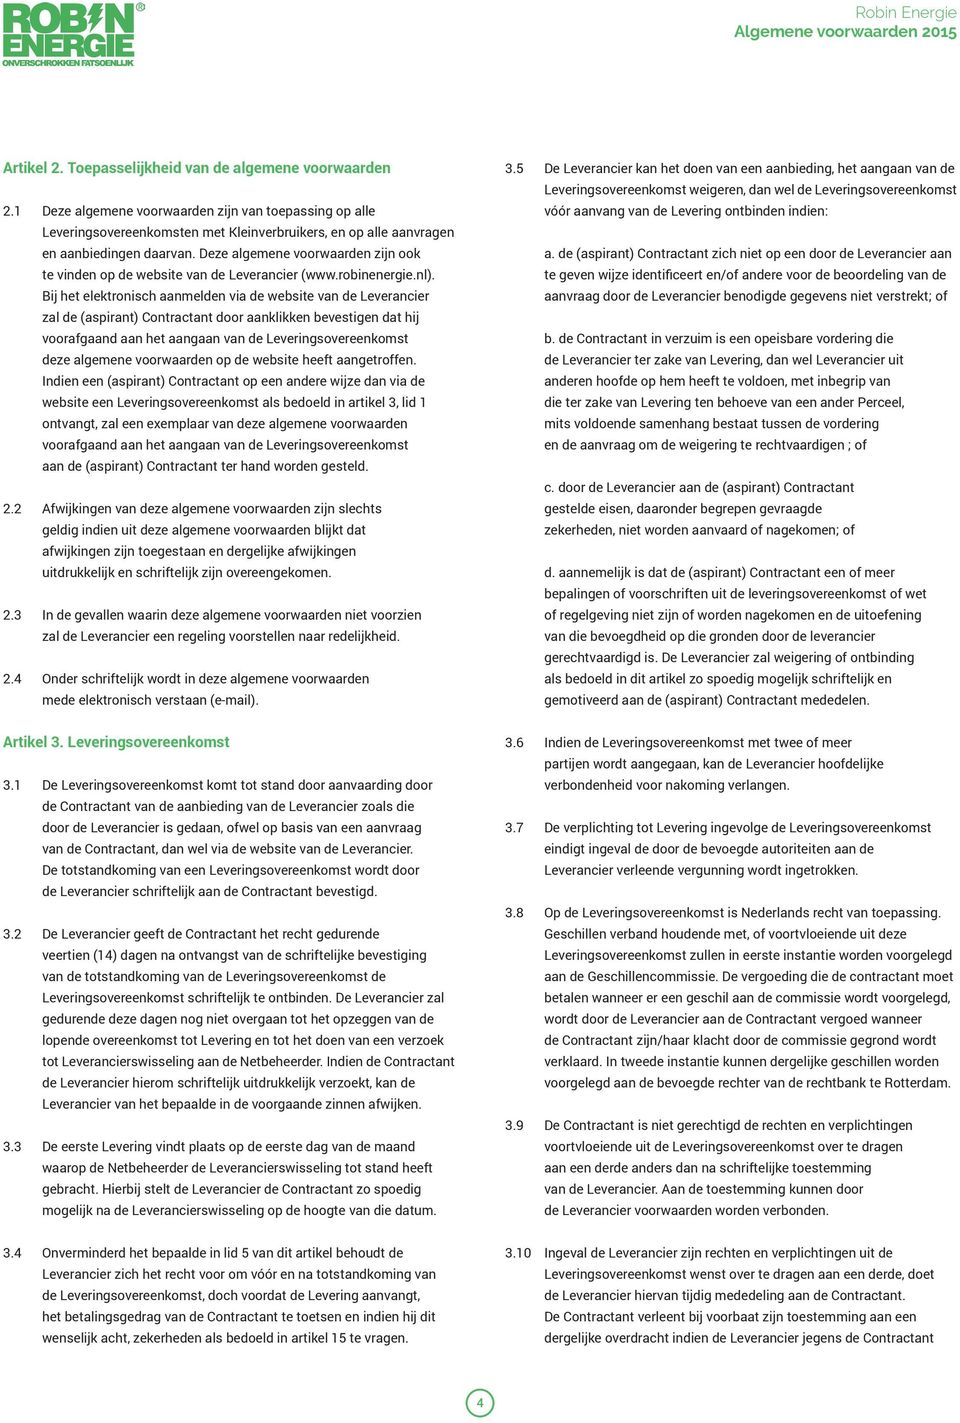 Deze algemene voorwaarden zijn ook te vinden op de website van de Leverancier (www.robinenergie.nl).